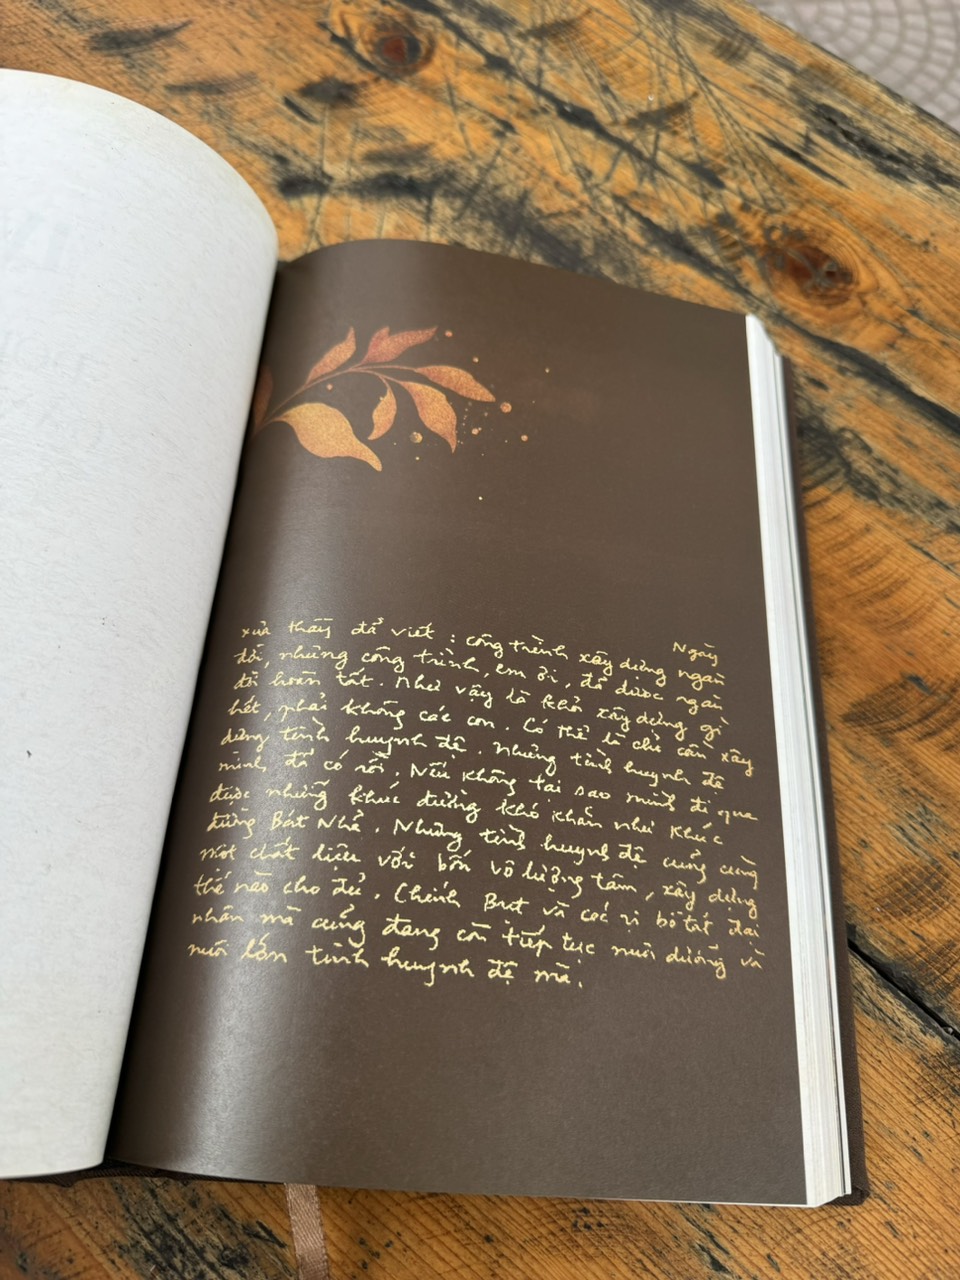 (Ấn bản đặc biệt giới hạn 124c bìa bọc vải - ảnh Sư ông được khắc laze trên gỗ Polywood, tên sách in nhũ vàng) ĐI GẶP MÙA XUÂN - HÀNH TRẠNG THIỀN SƯ THÍCH NHẤT HẠNH